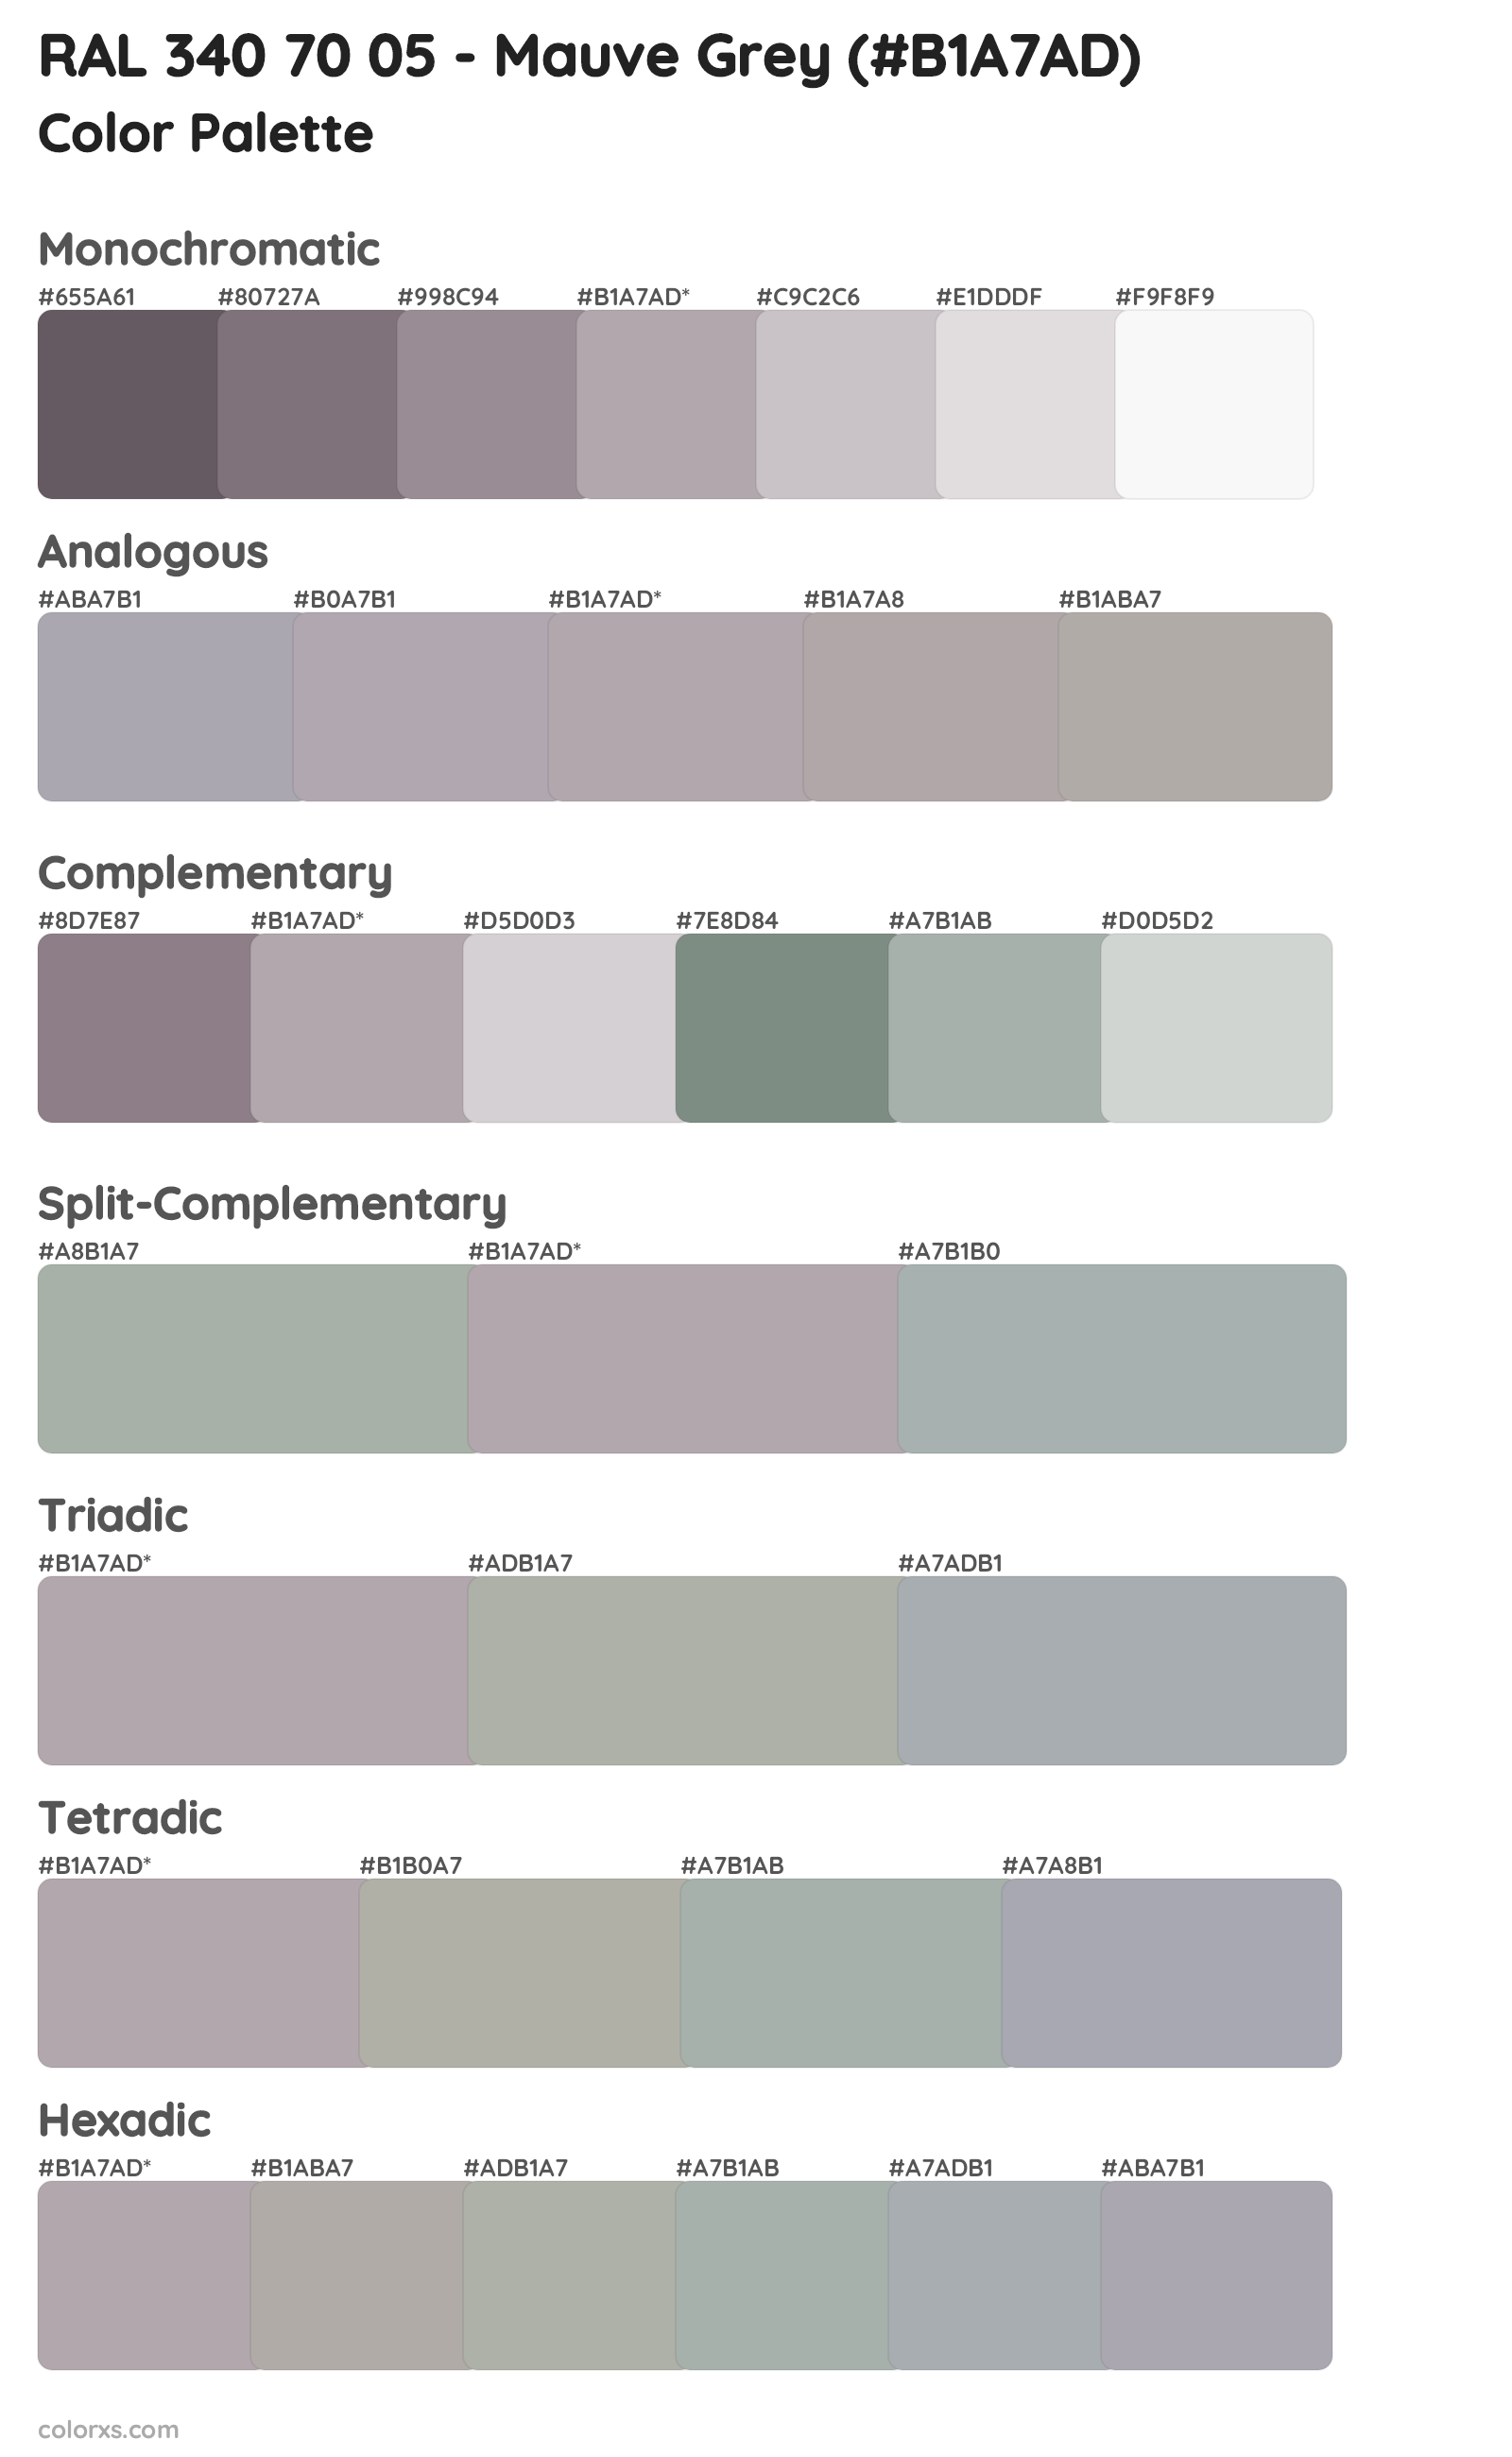 RAL 340 70 05 - Mauve Grey Color Scheme Palettes